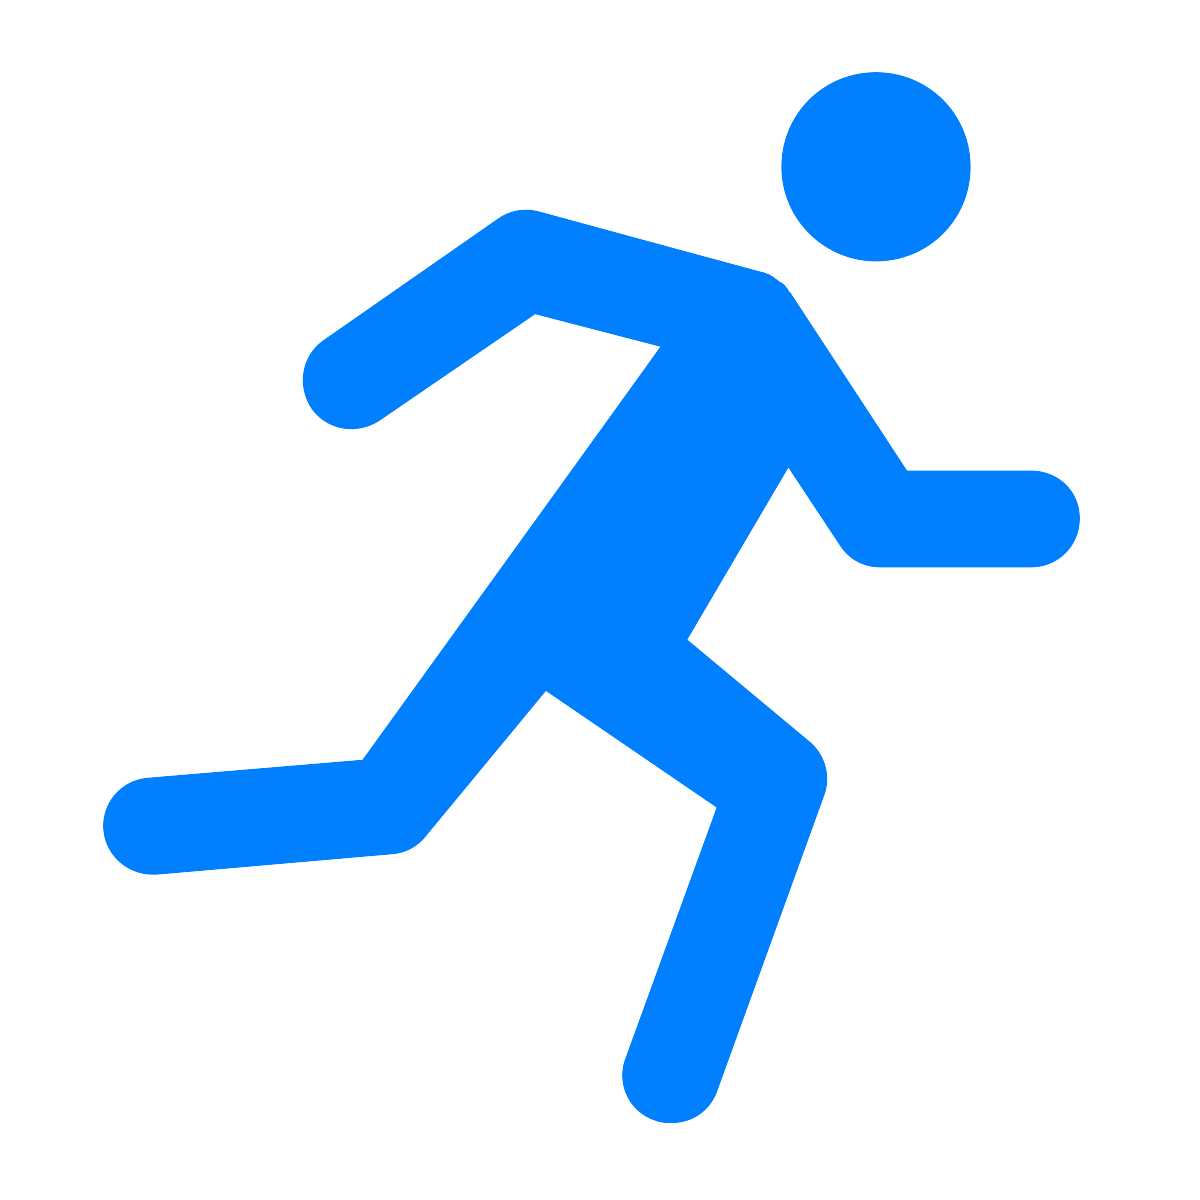 Running icon. Бегущий человечек. Символ бегущего человека. Бегущий человечек иконка. Пиктограмма бегать.